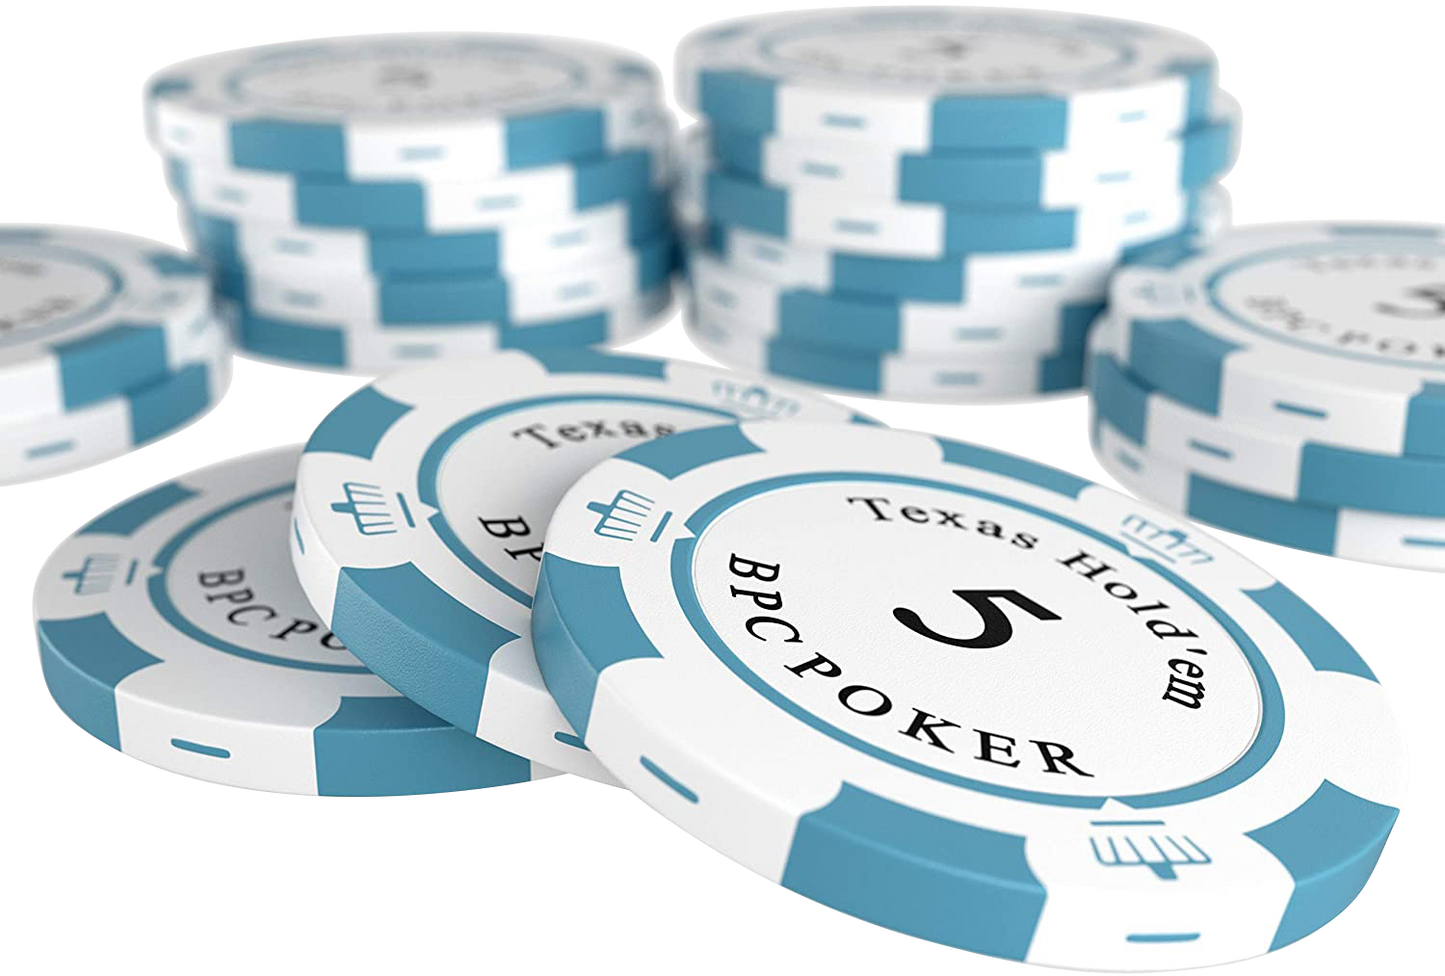 Pokerkoffer mit 300 Clay Pokerchips "Carmela" mit Werten